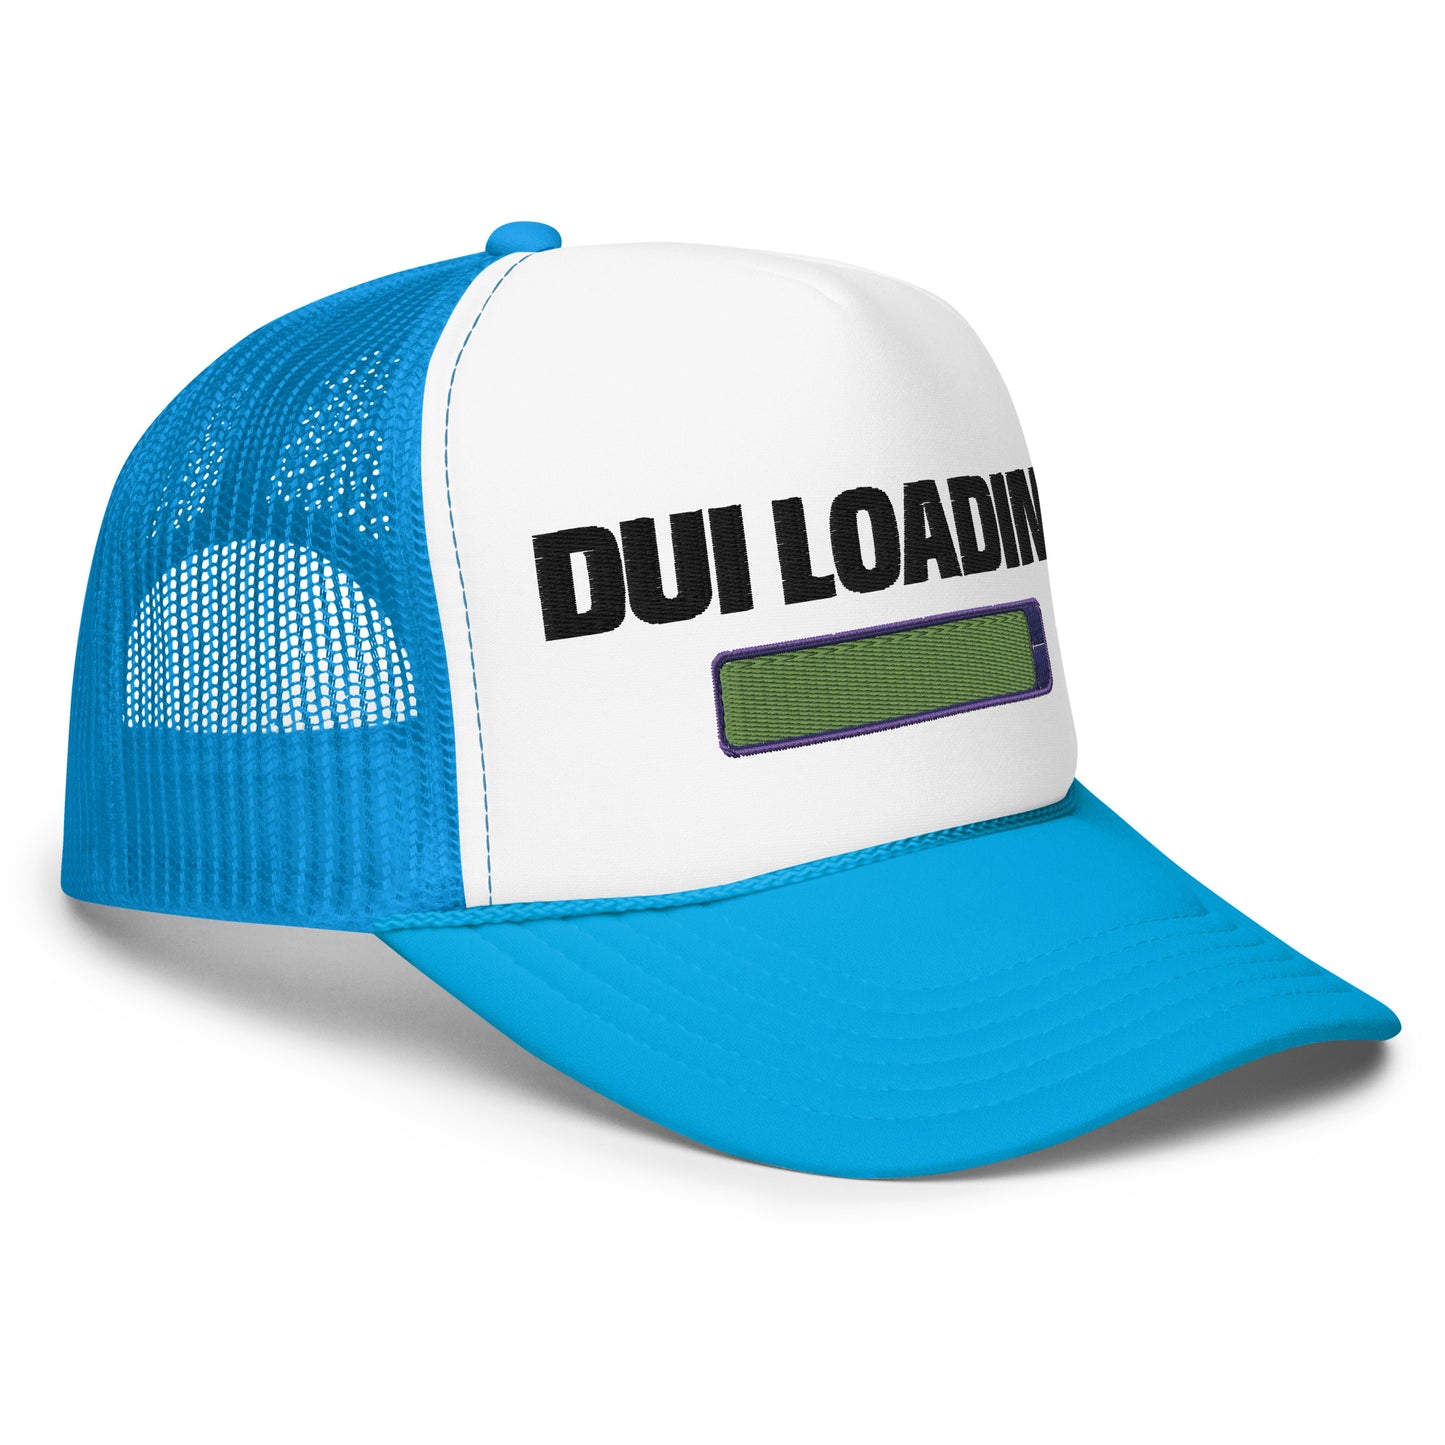 DUI Loading Foam Trucker Hat